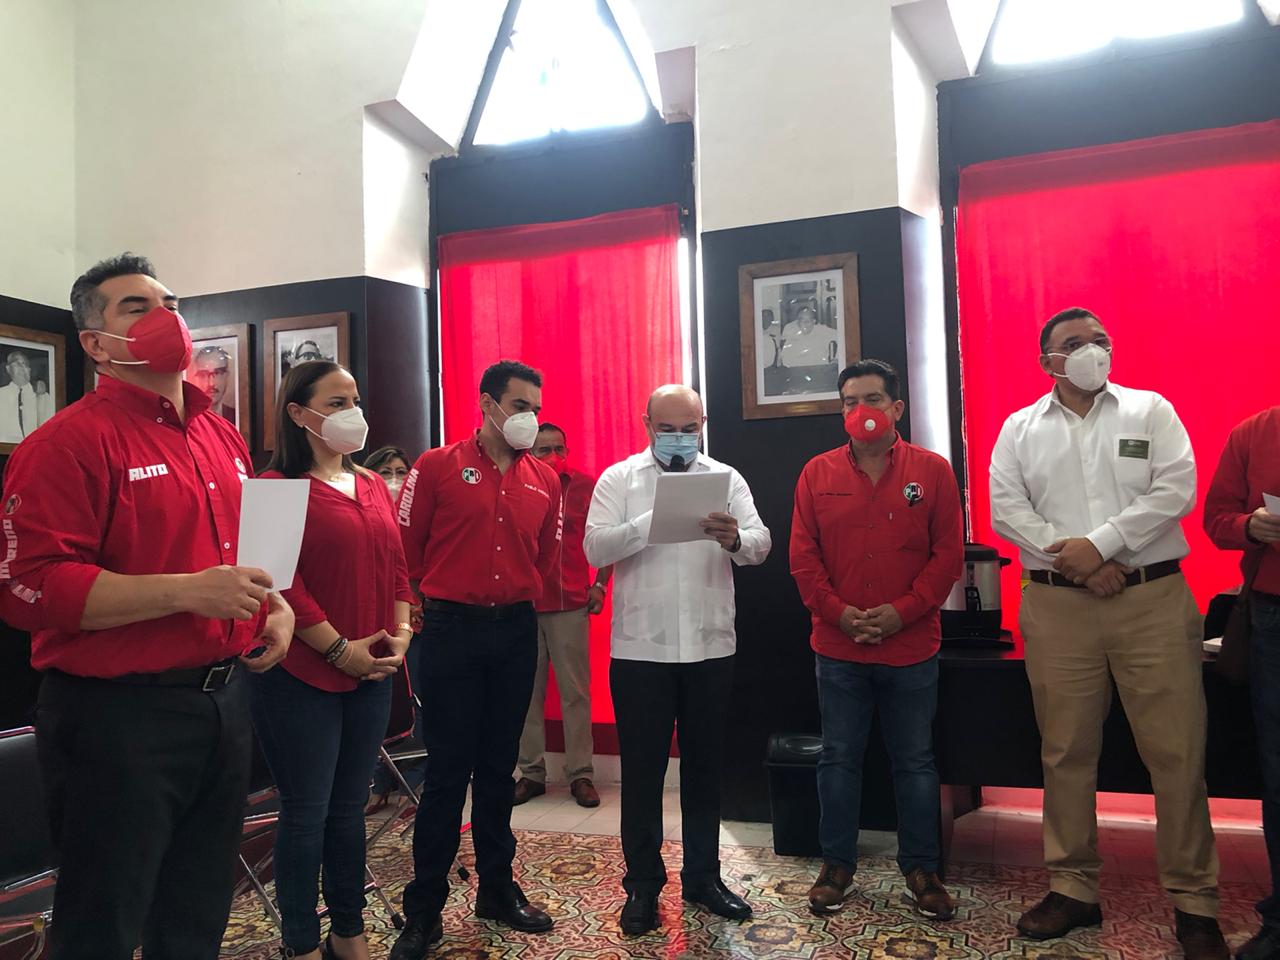 Los sondeos y mediciones indican que el PRI volverá a ganar en Yucatán: Alito